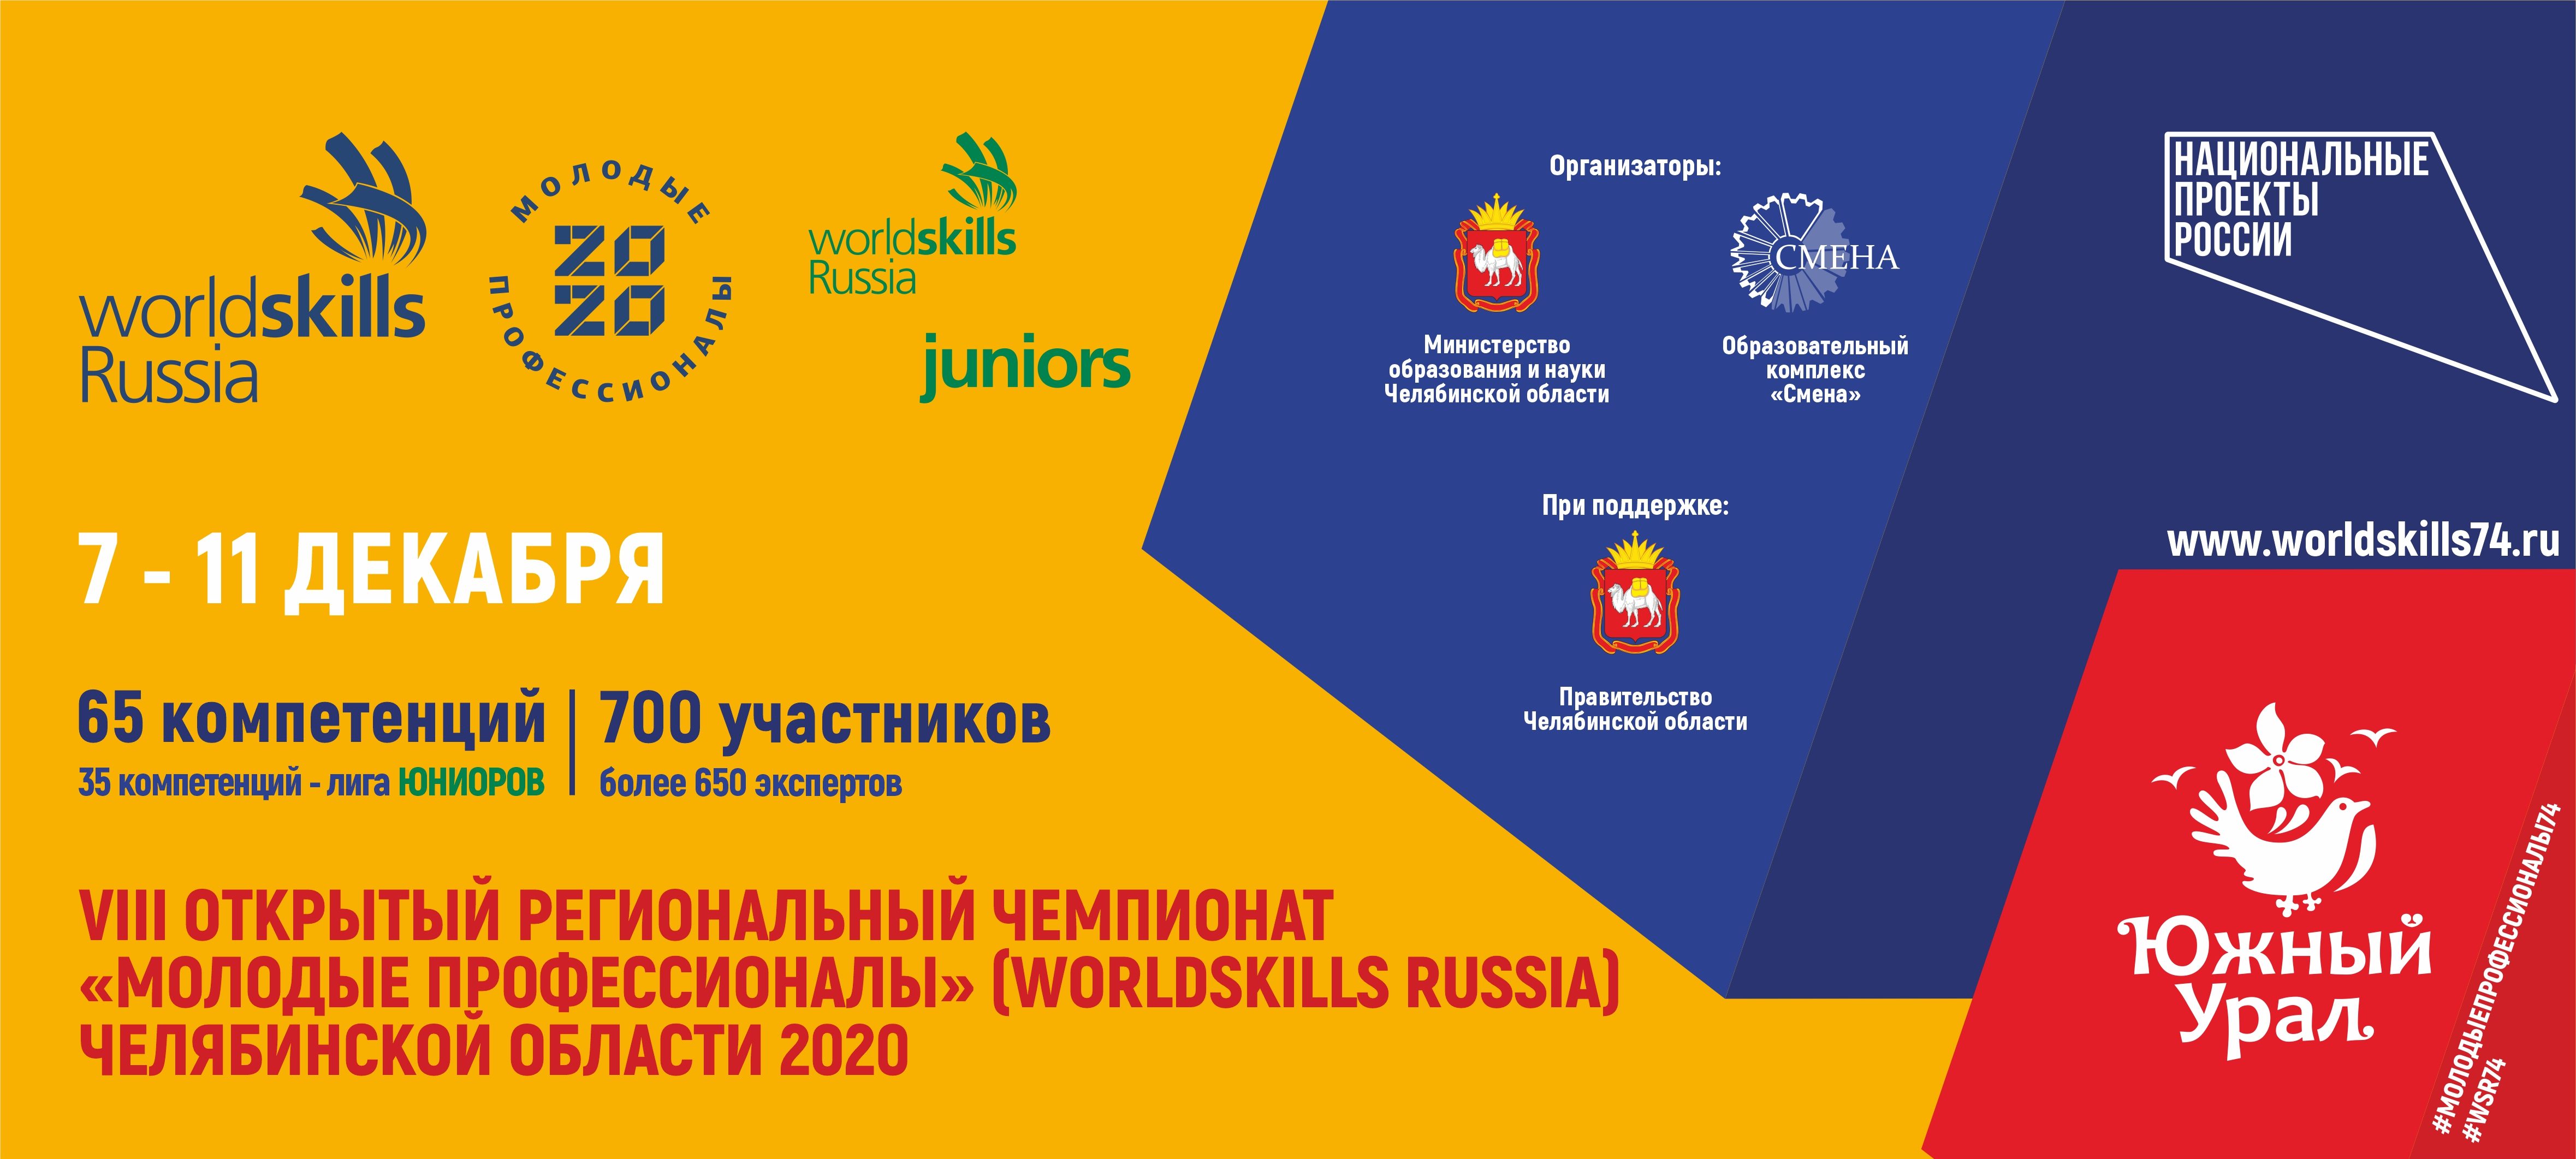 Итоги IX Открытого регионального чемпионата «Молодые профессионалы» (WorldSkills Russia) 